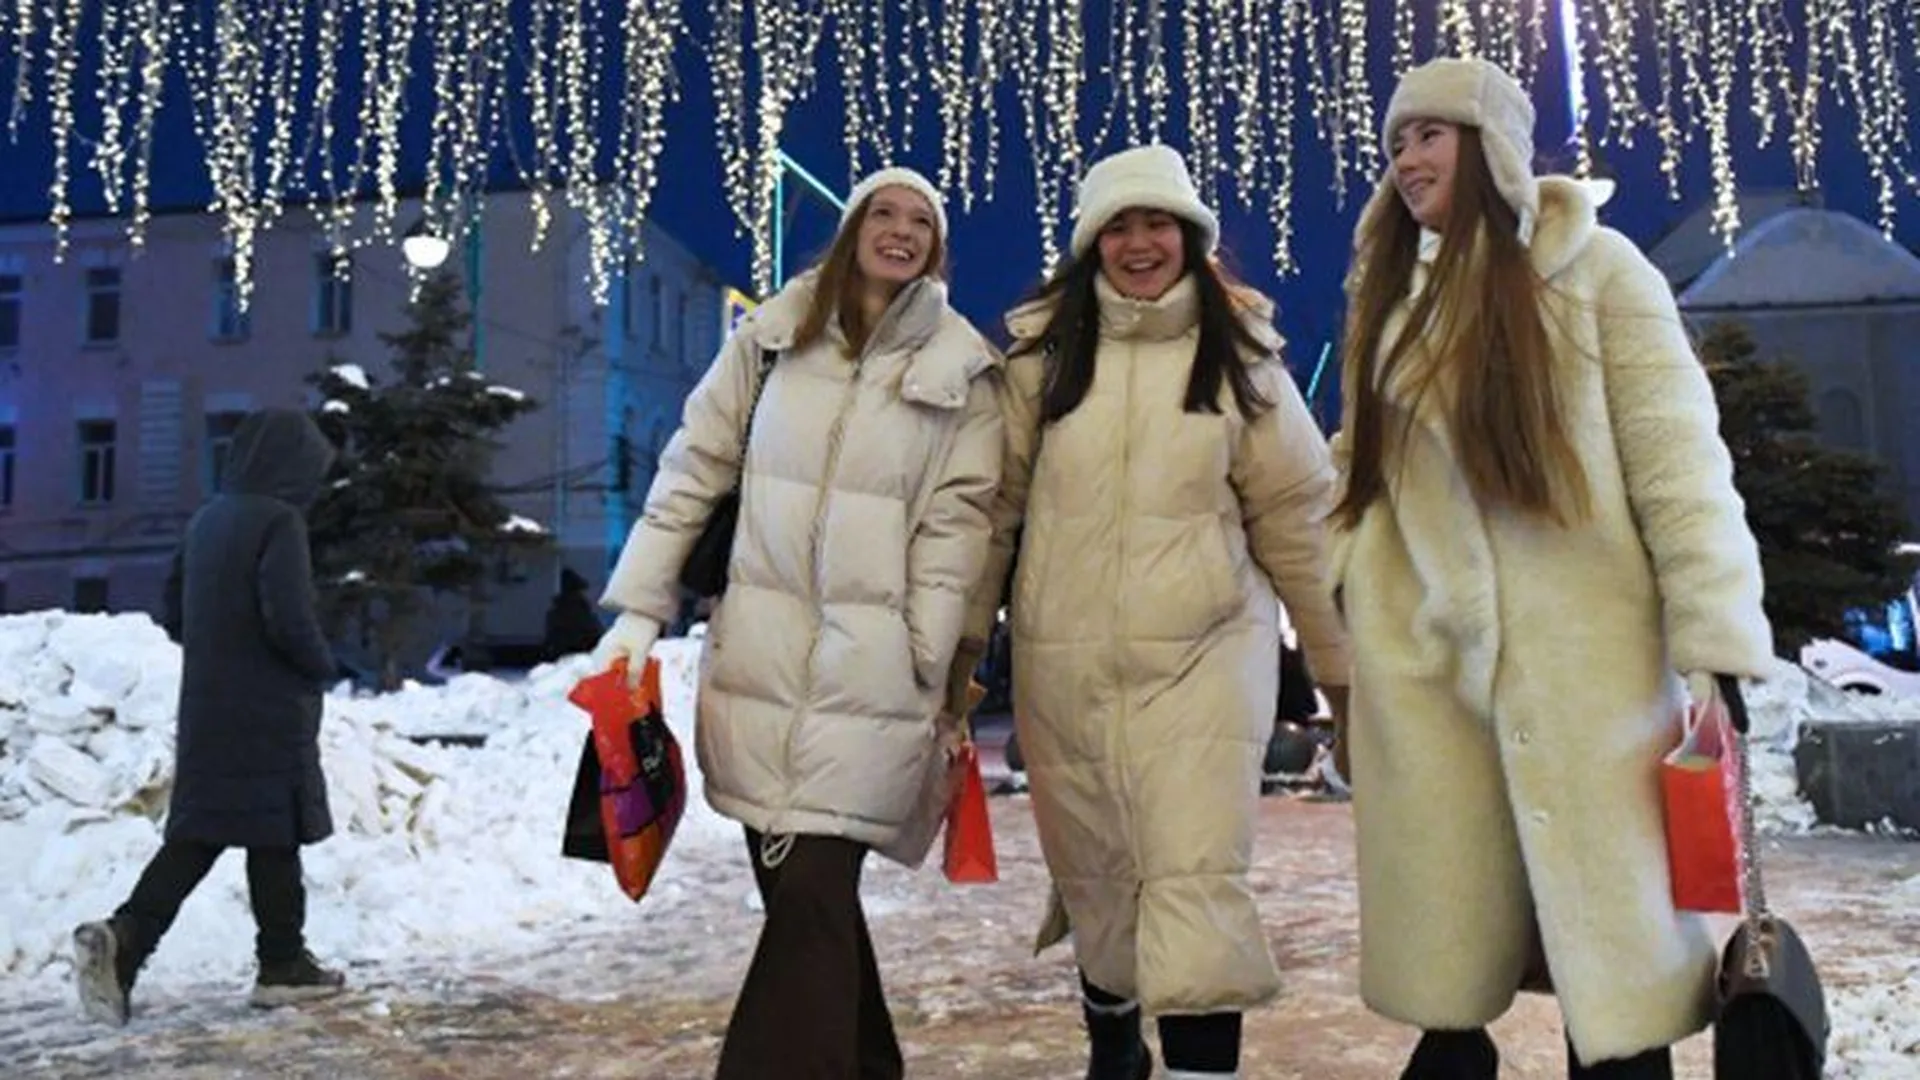 Деньги в подарок, вынос хлама, платья в горошек: новогодние традиции разных стран, которые удивили россиян